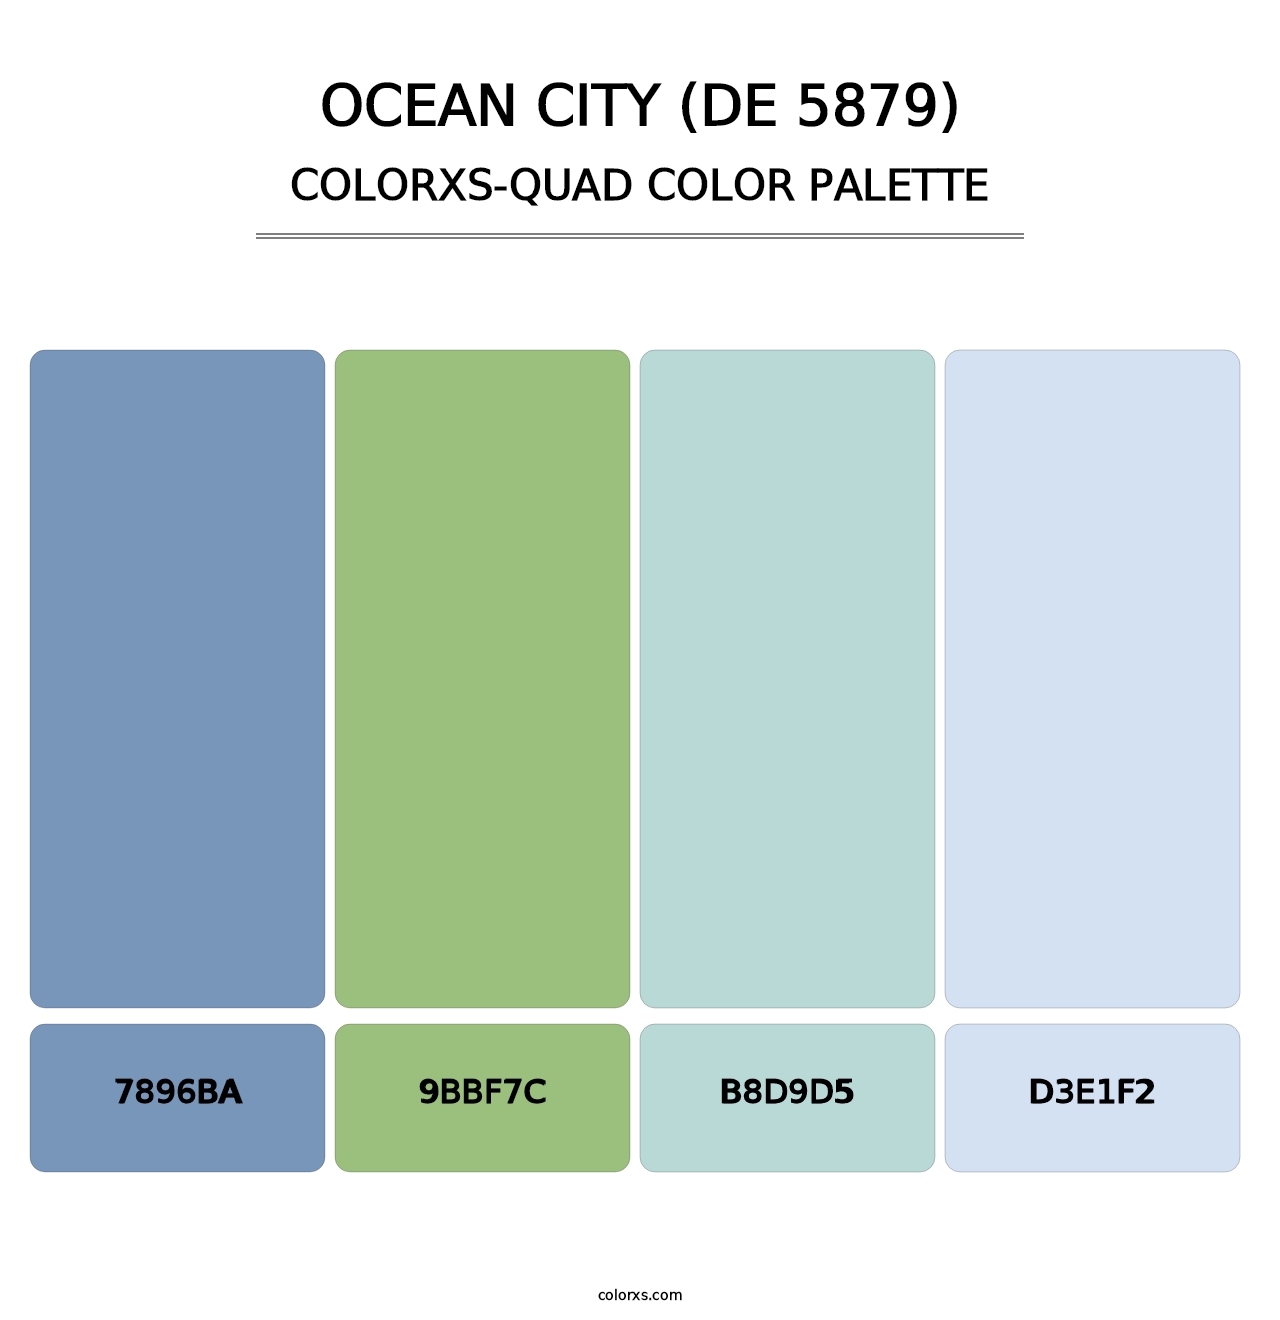 Ocean City (DE 5879) - Colorxs Quad Palette